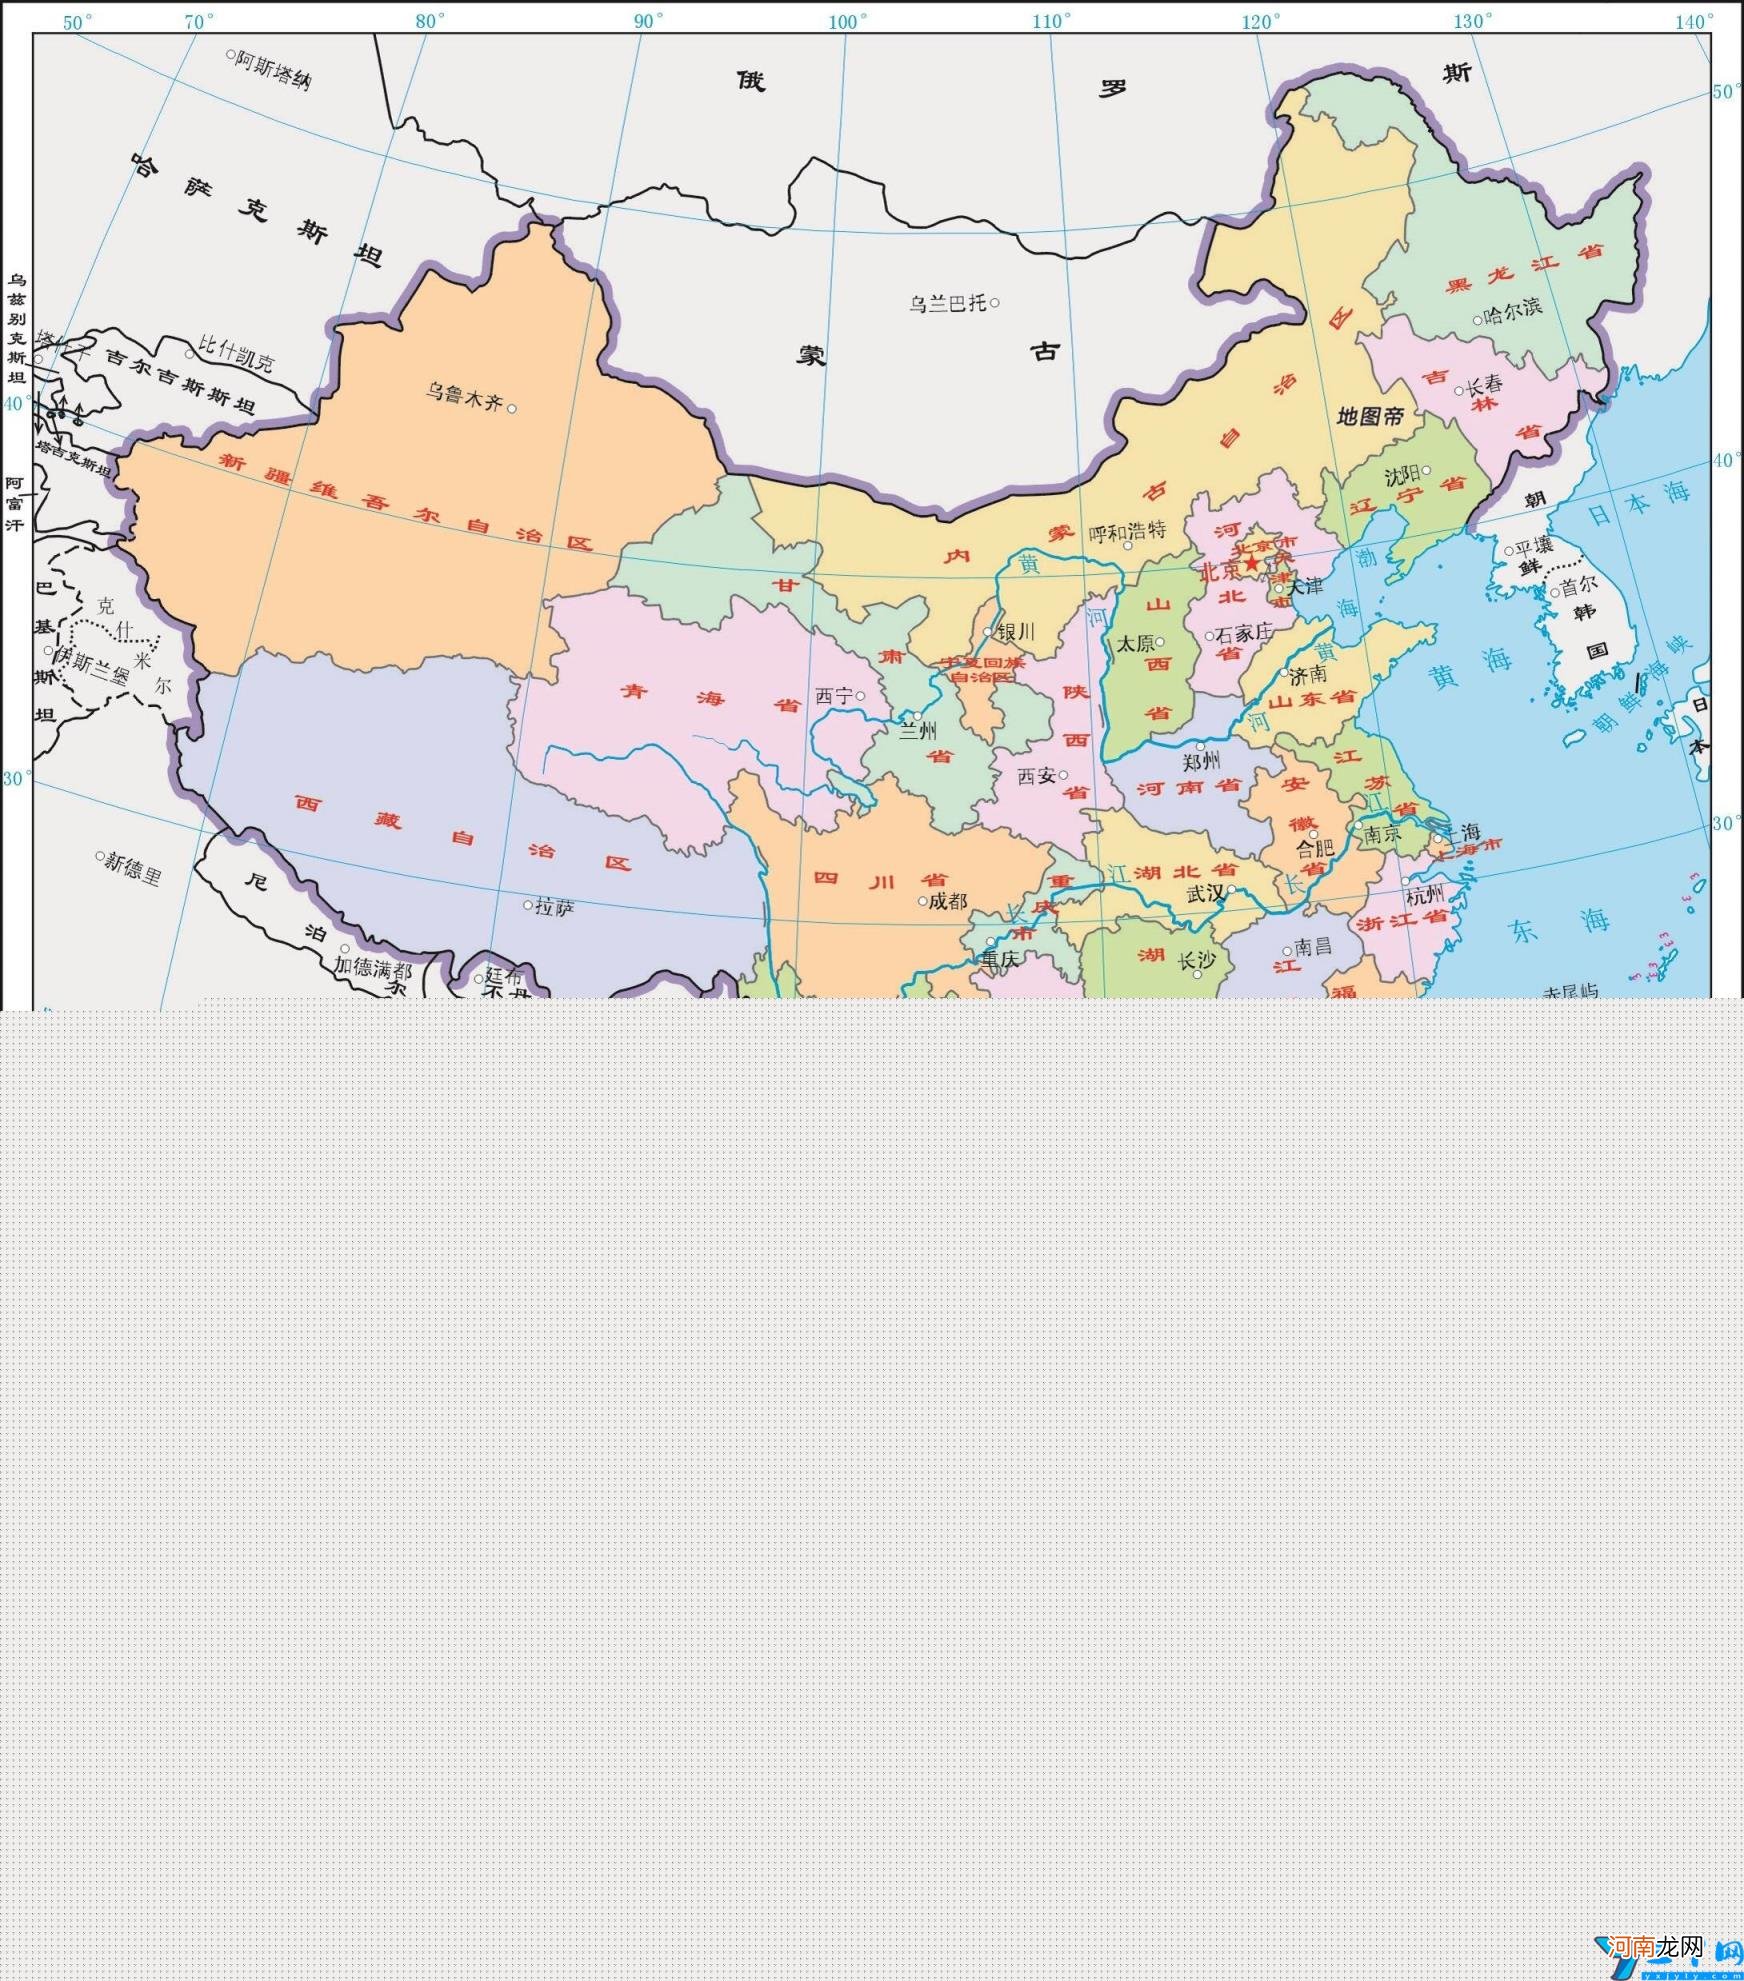 尼泊尔简介 尼泊尔地图位置